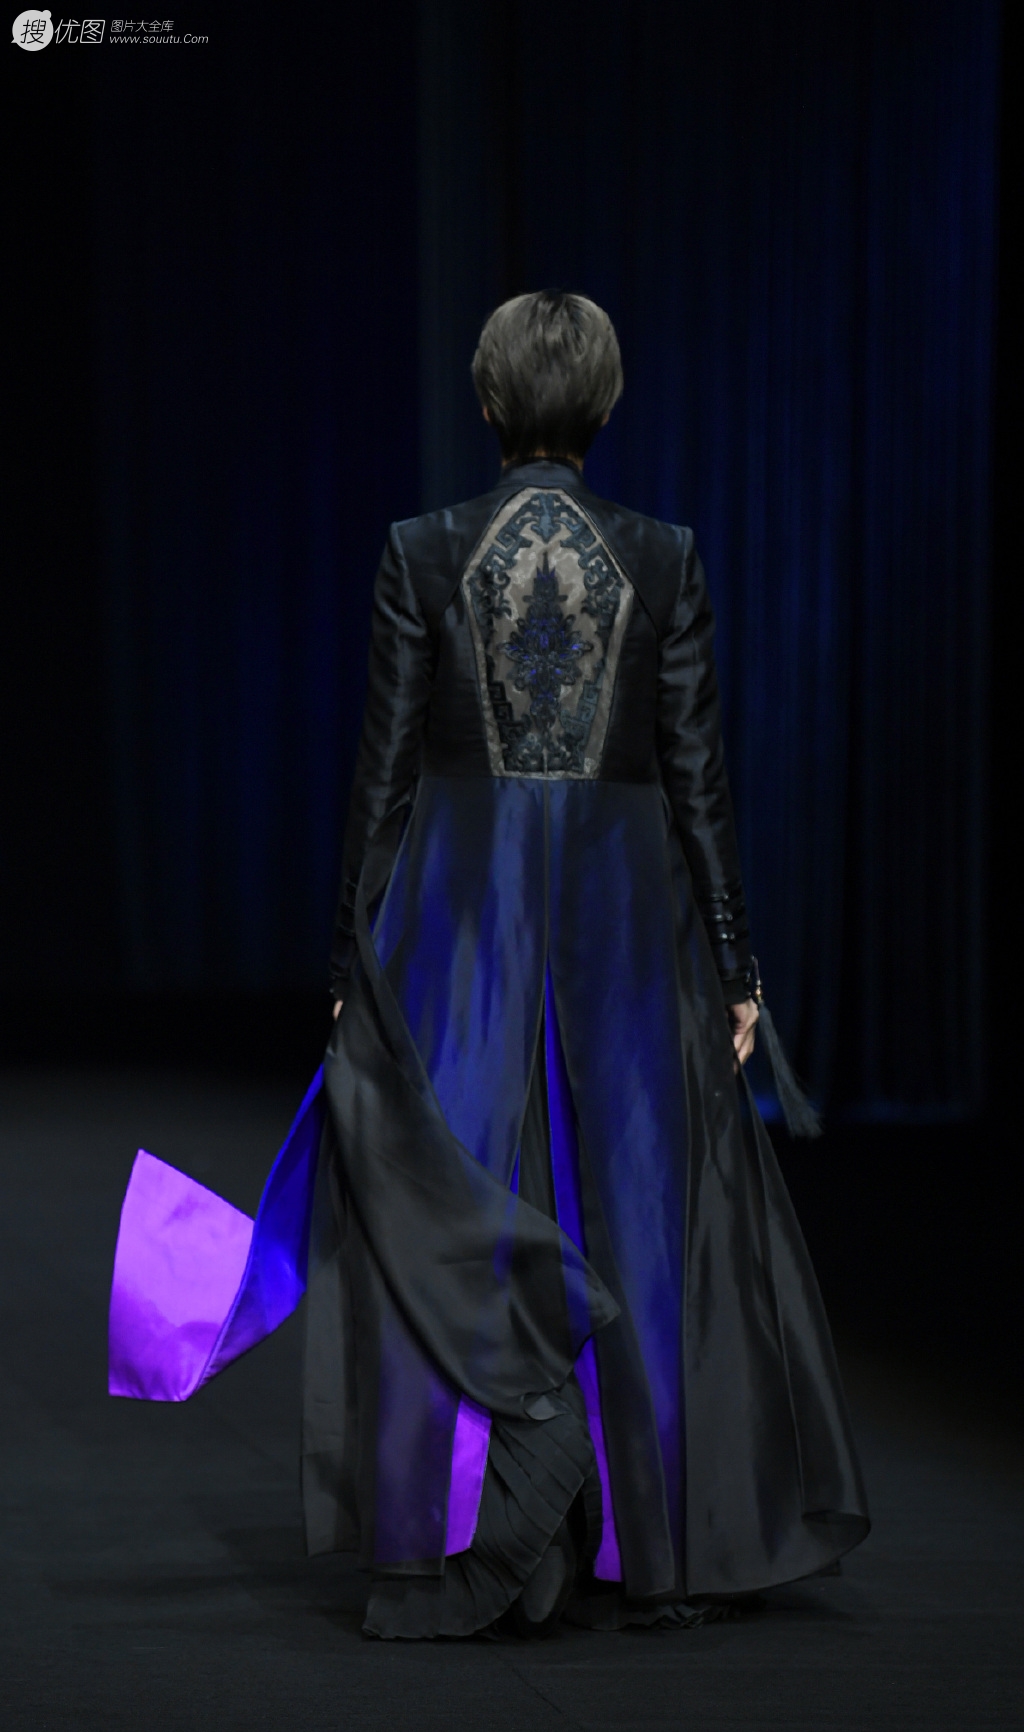 师铭泽国潮风黑衣造型 酷刷亮相盖娅传说时装周大秀图片第2张